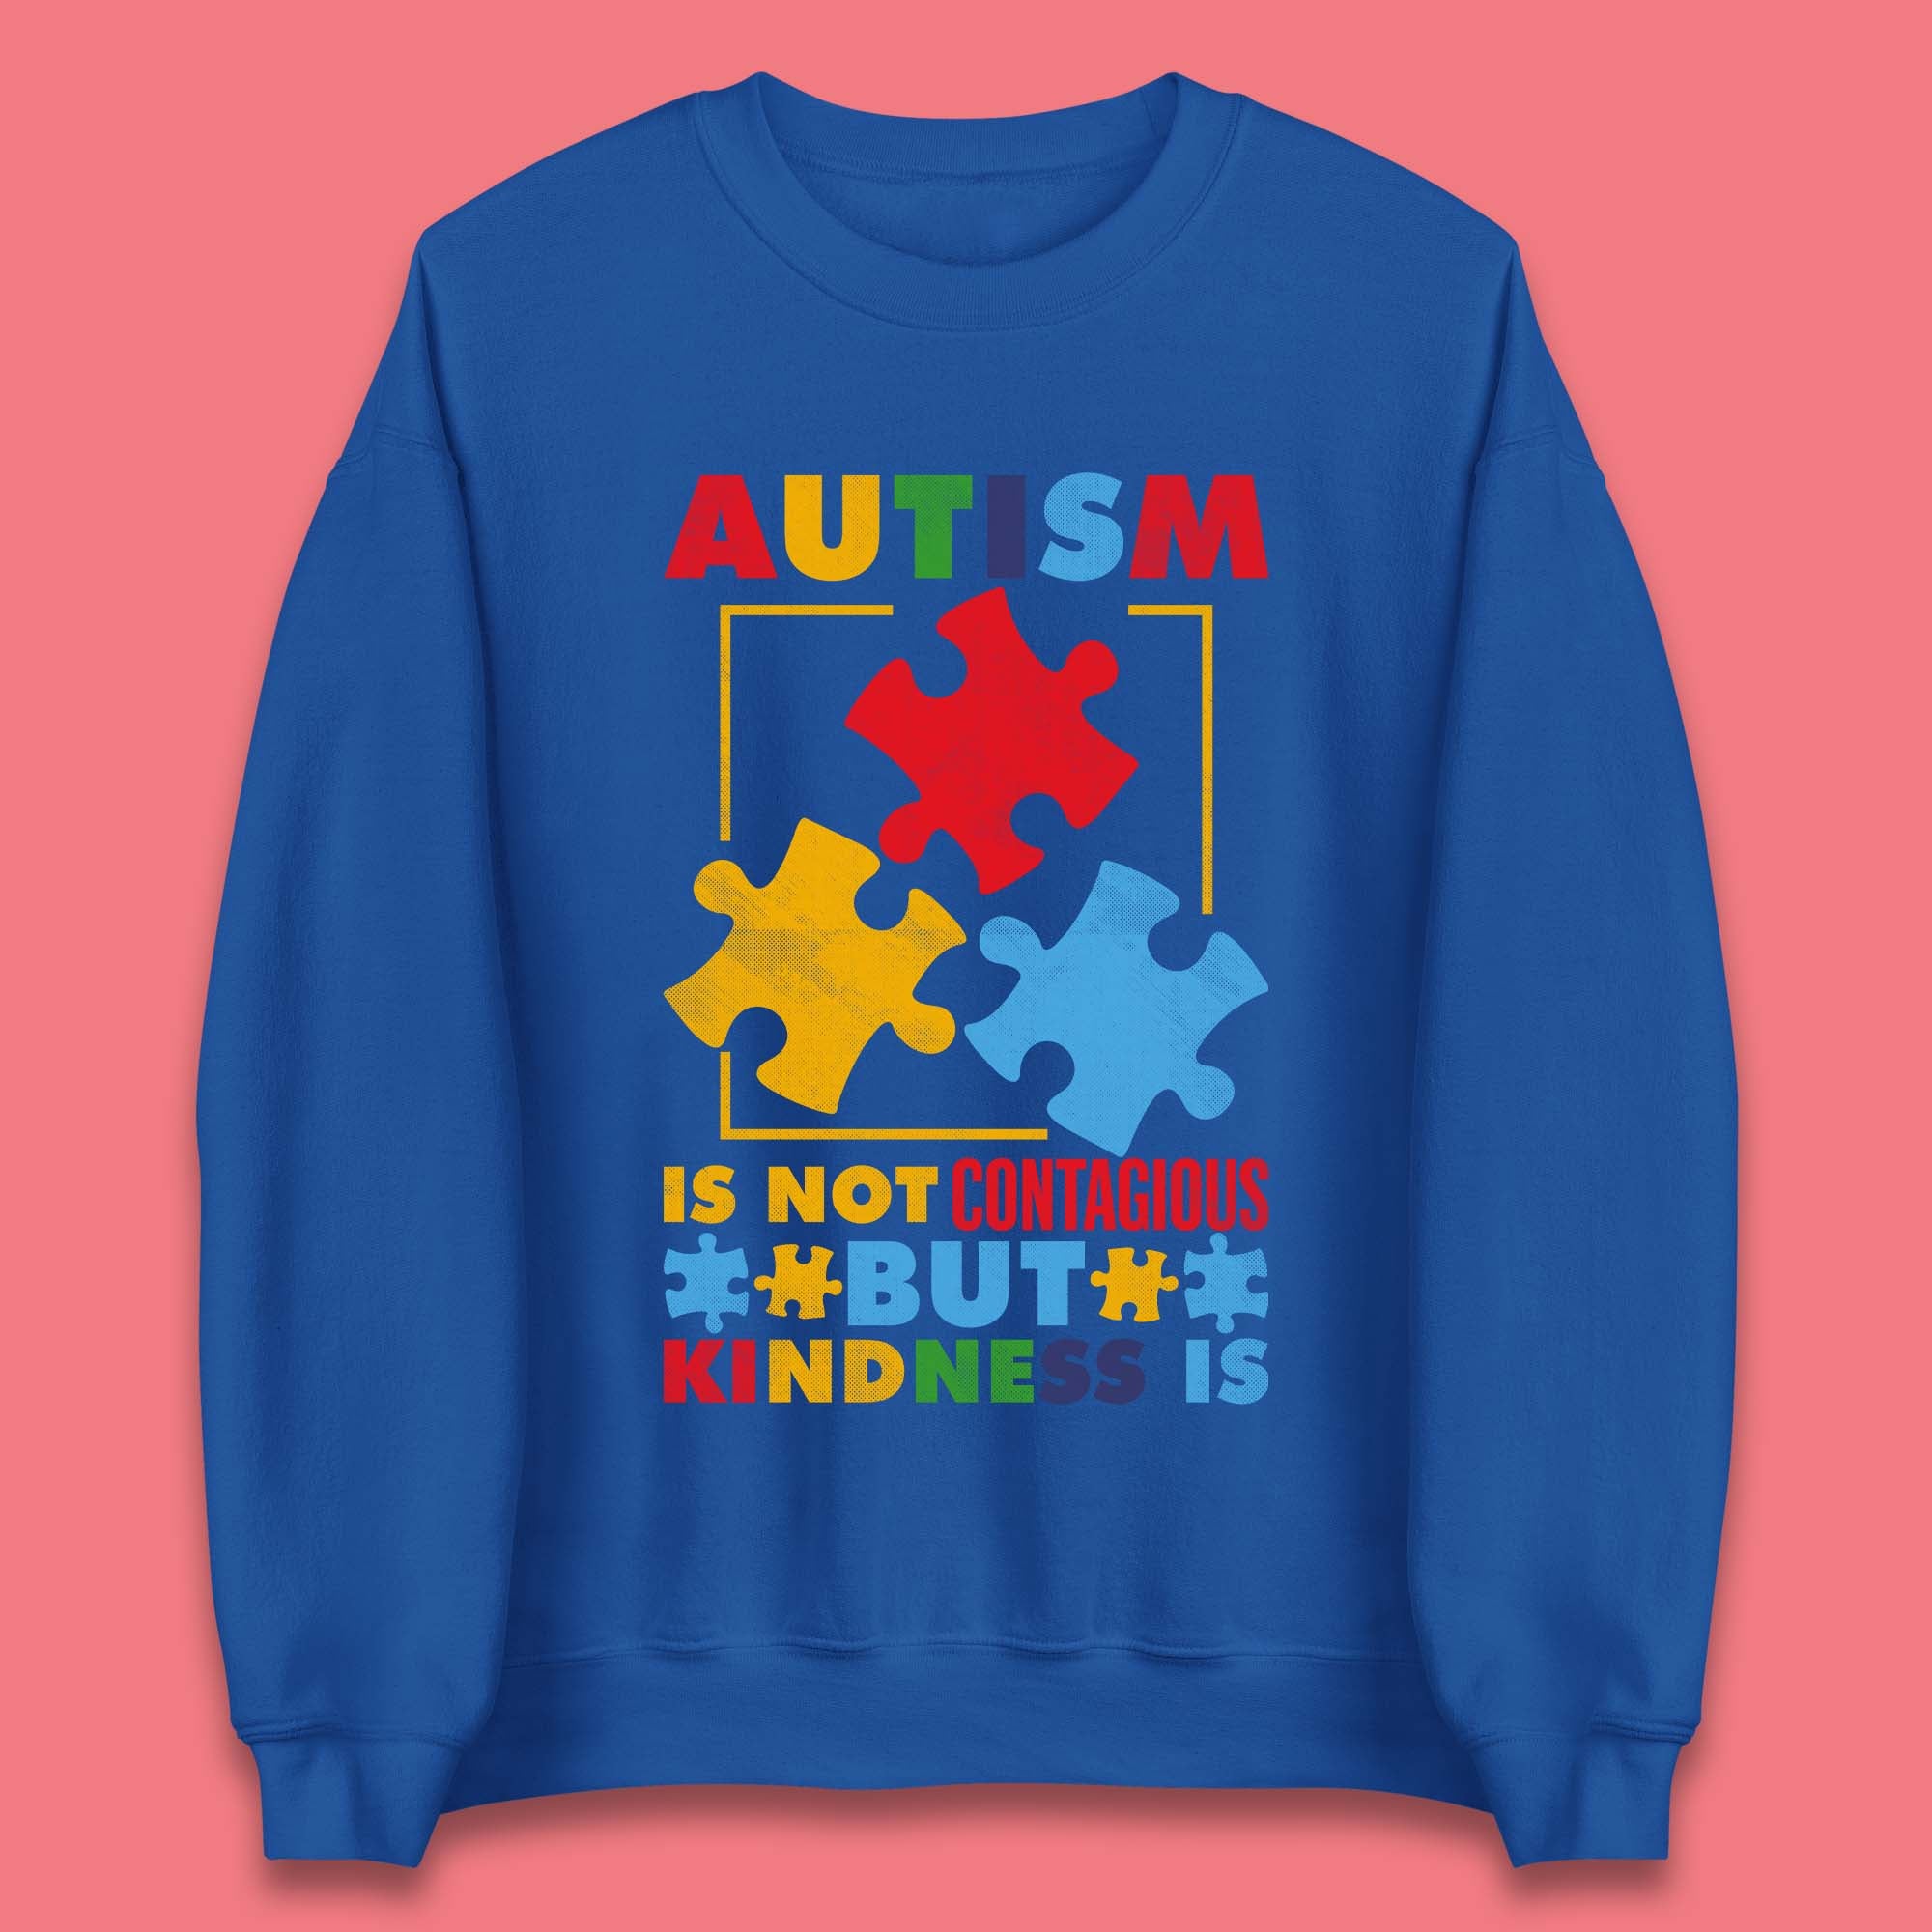 Autism Kindness Unisex Sweatshirt